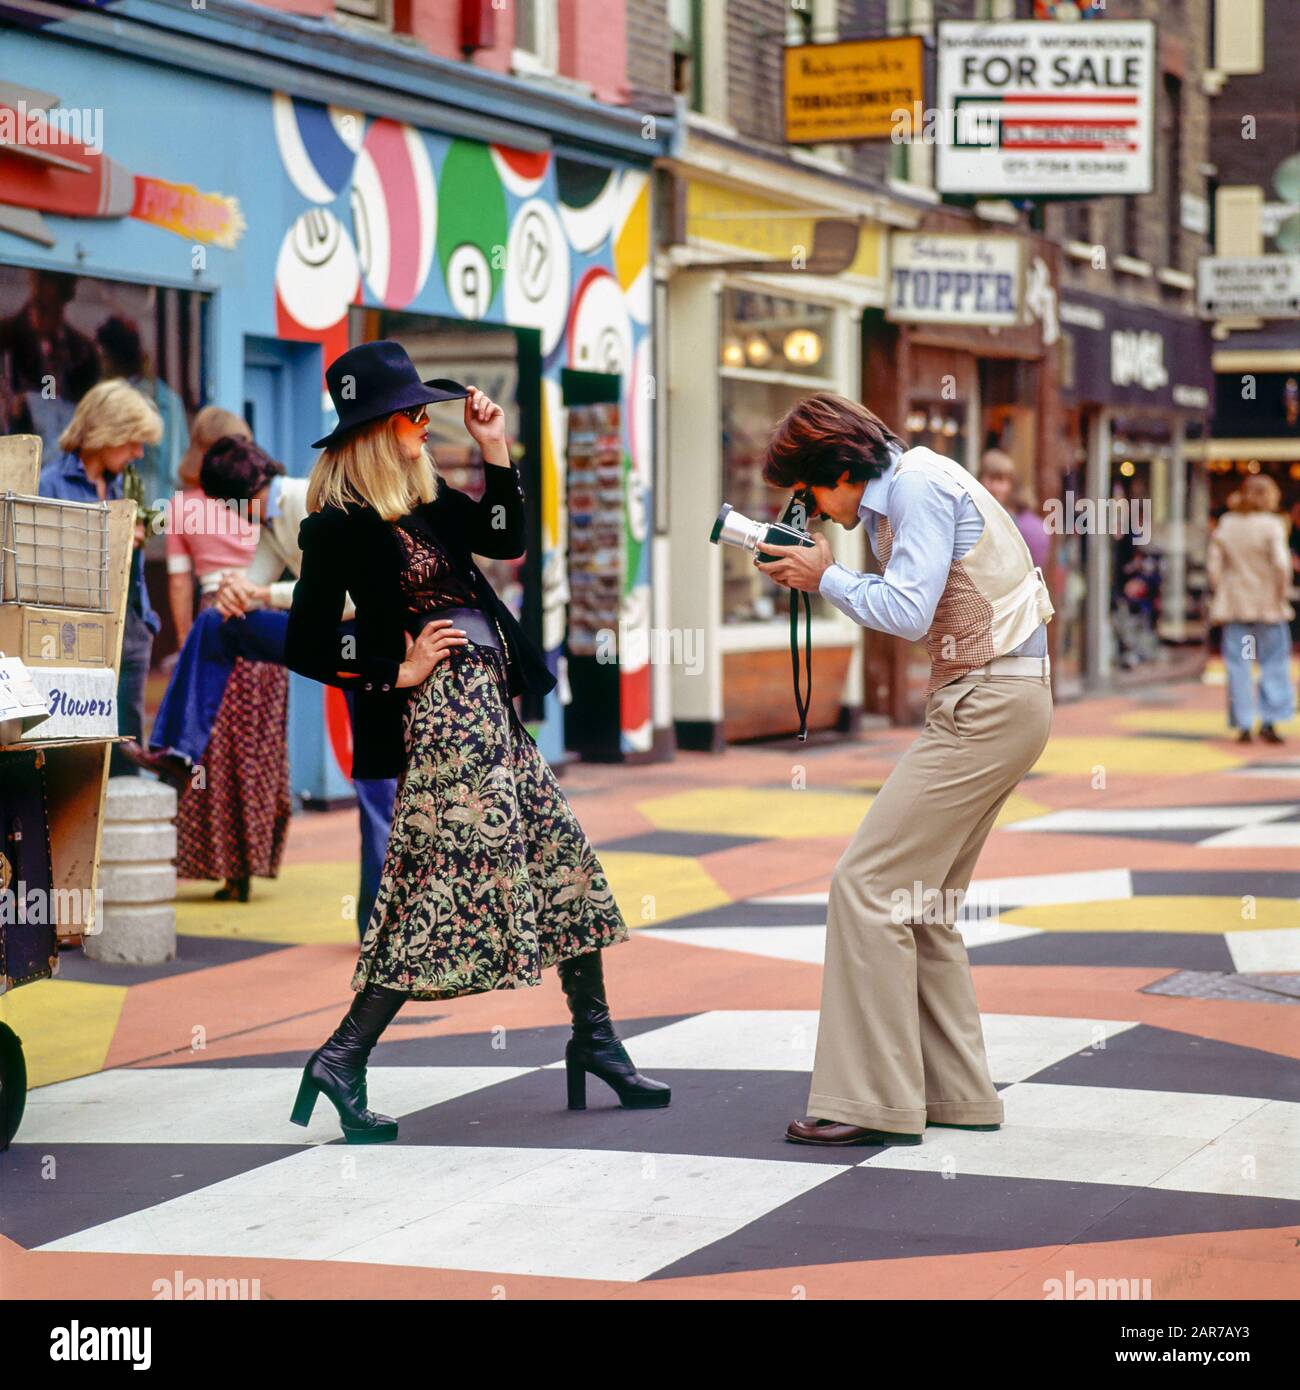 Londra 1970, fotografo che scatta foto con il modello di moda femminile, Carnaby Street, Soho, Inghilterra, Regno Unito, GB, Gran Bretagna, Foto Stock